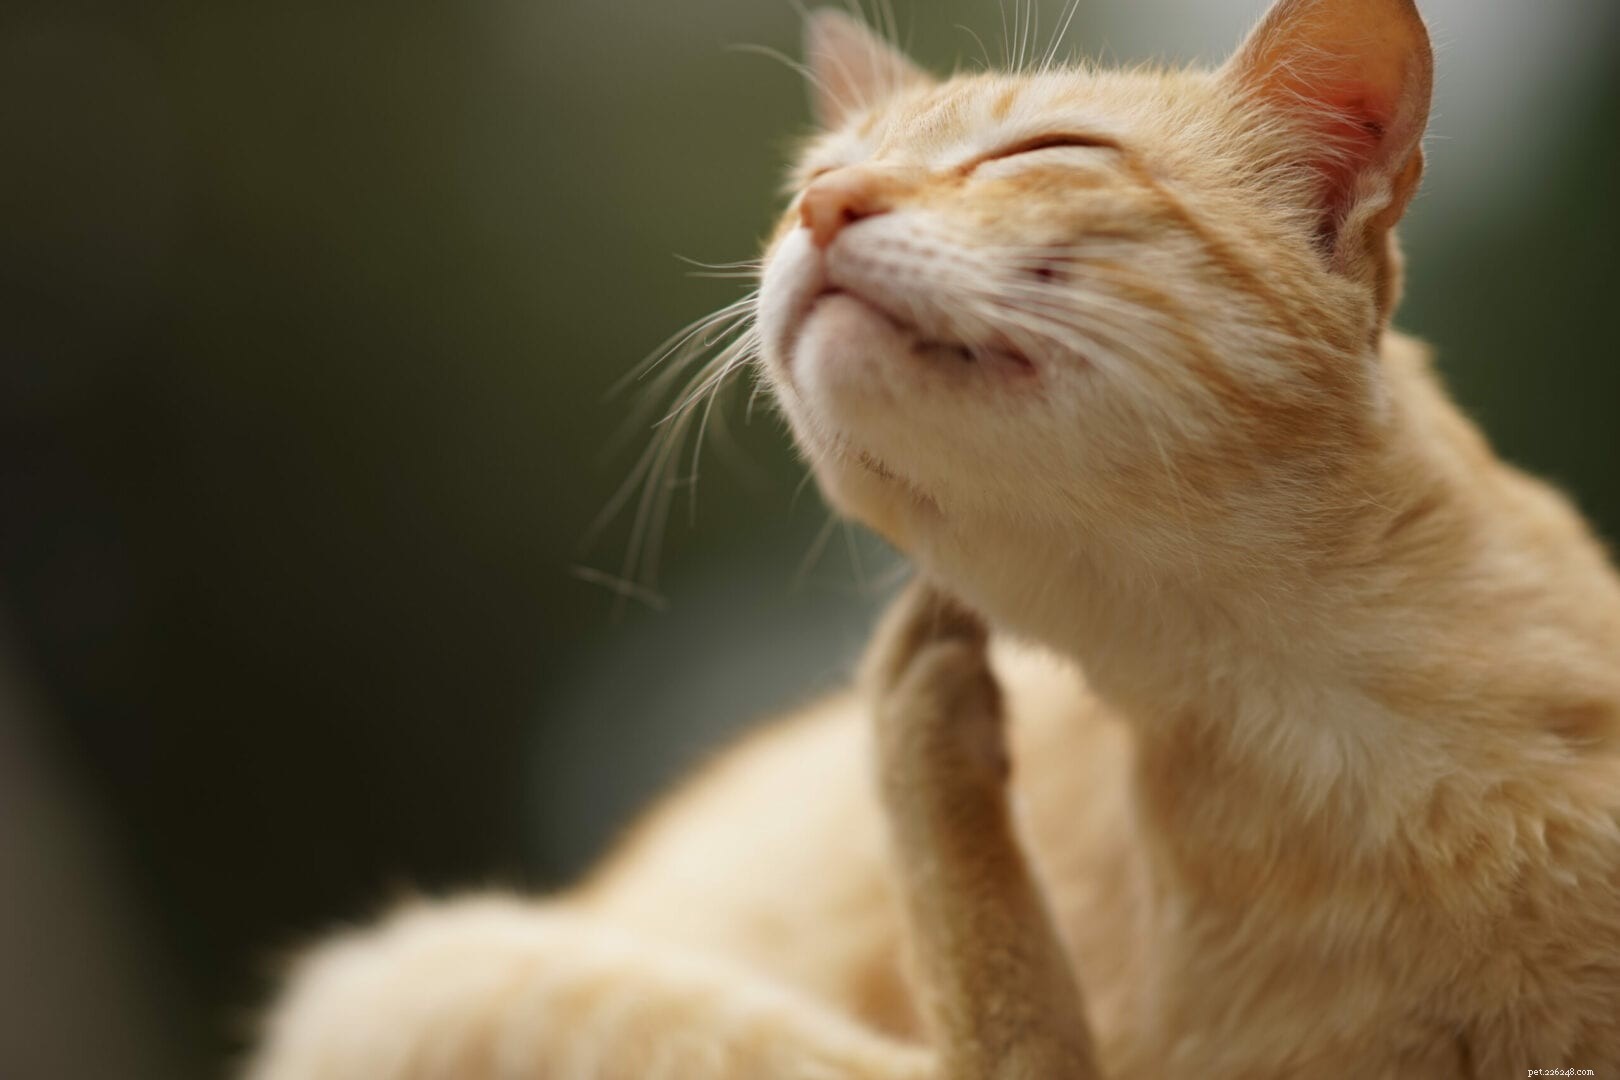 Hoe weet u of uw kat voedselallergieën heeft